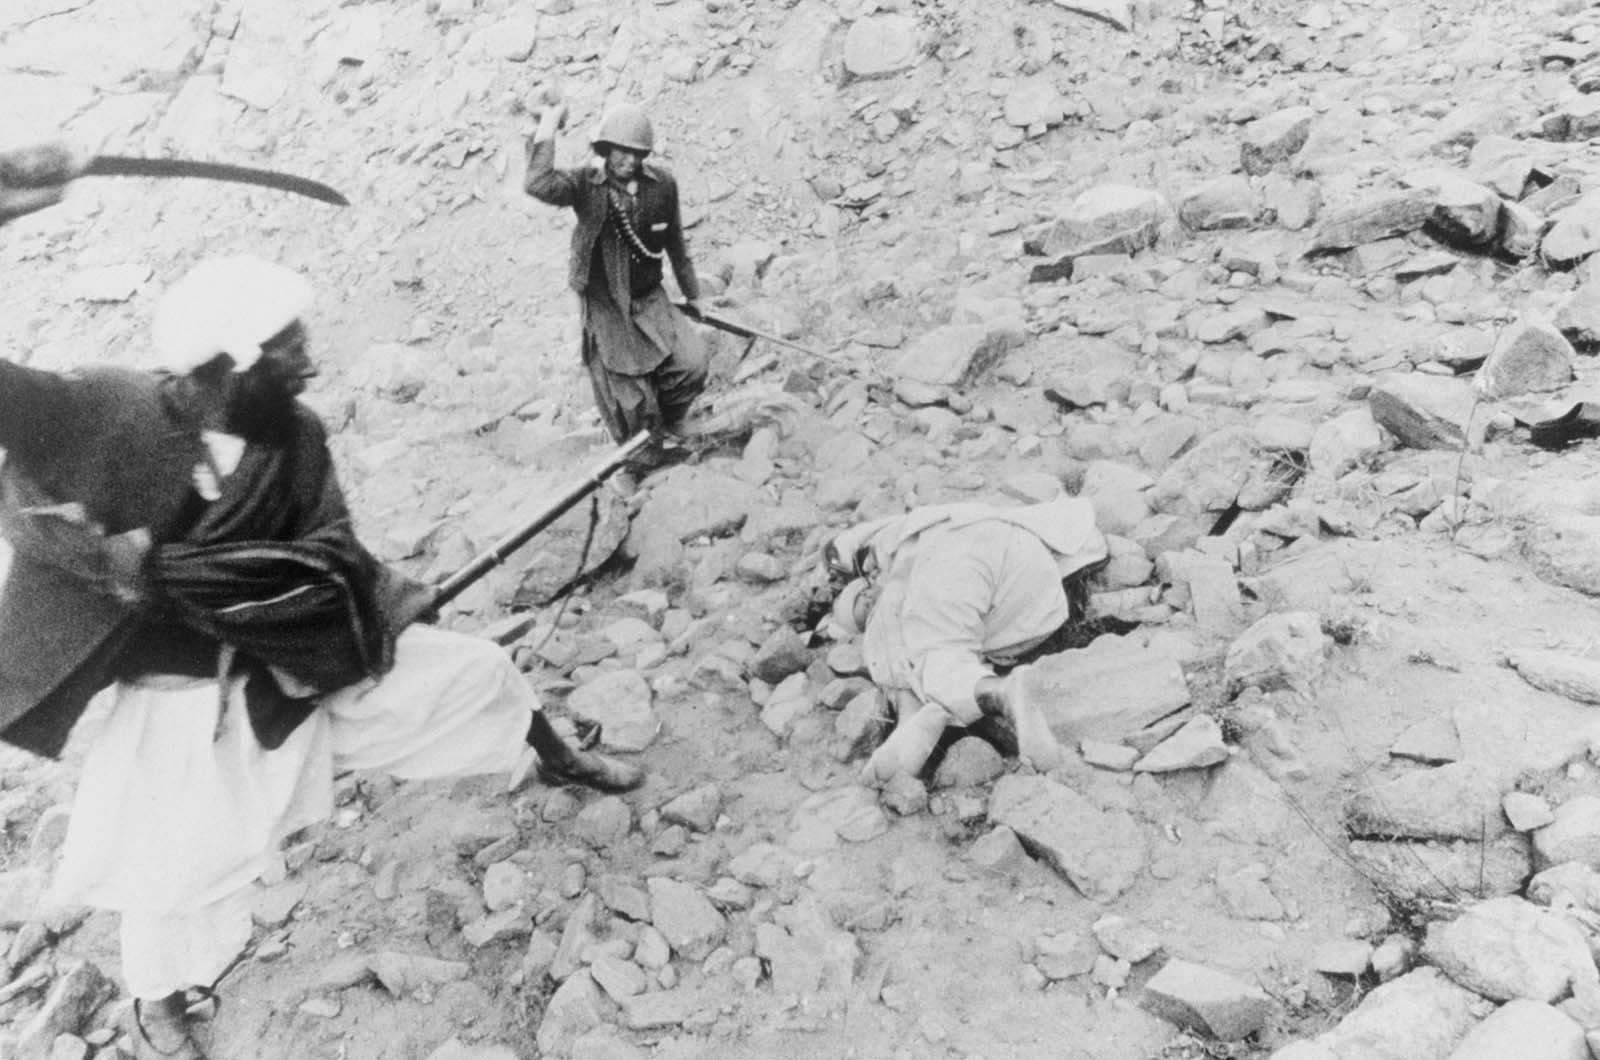 Exécution d'un traître pendant la guerre en Afghanistan, 1980